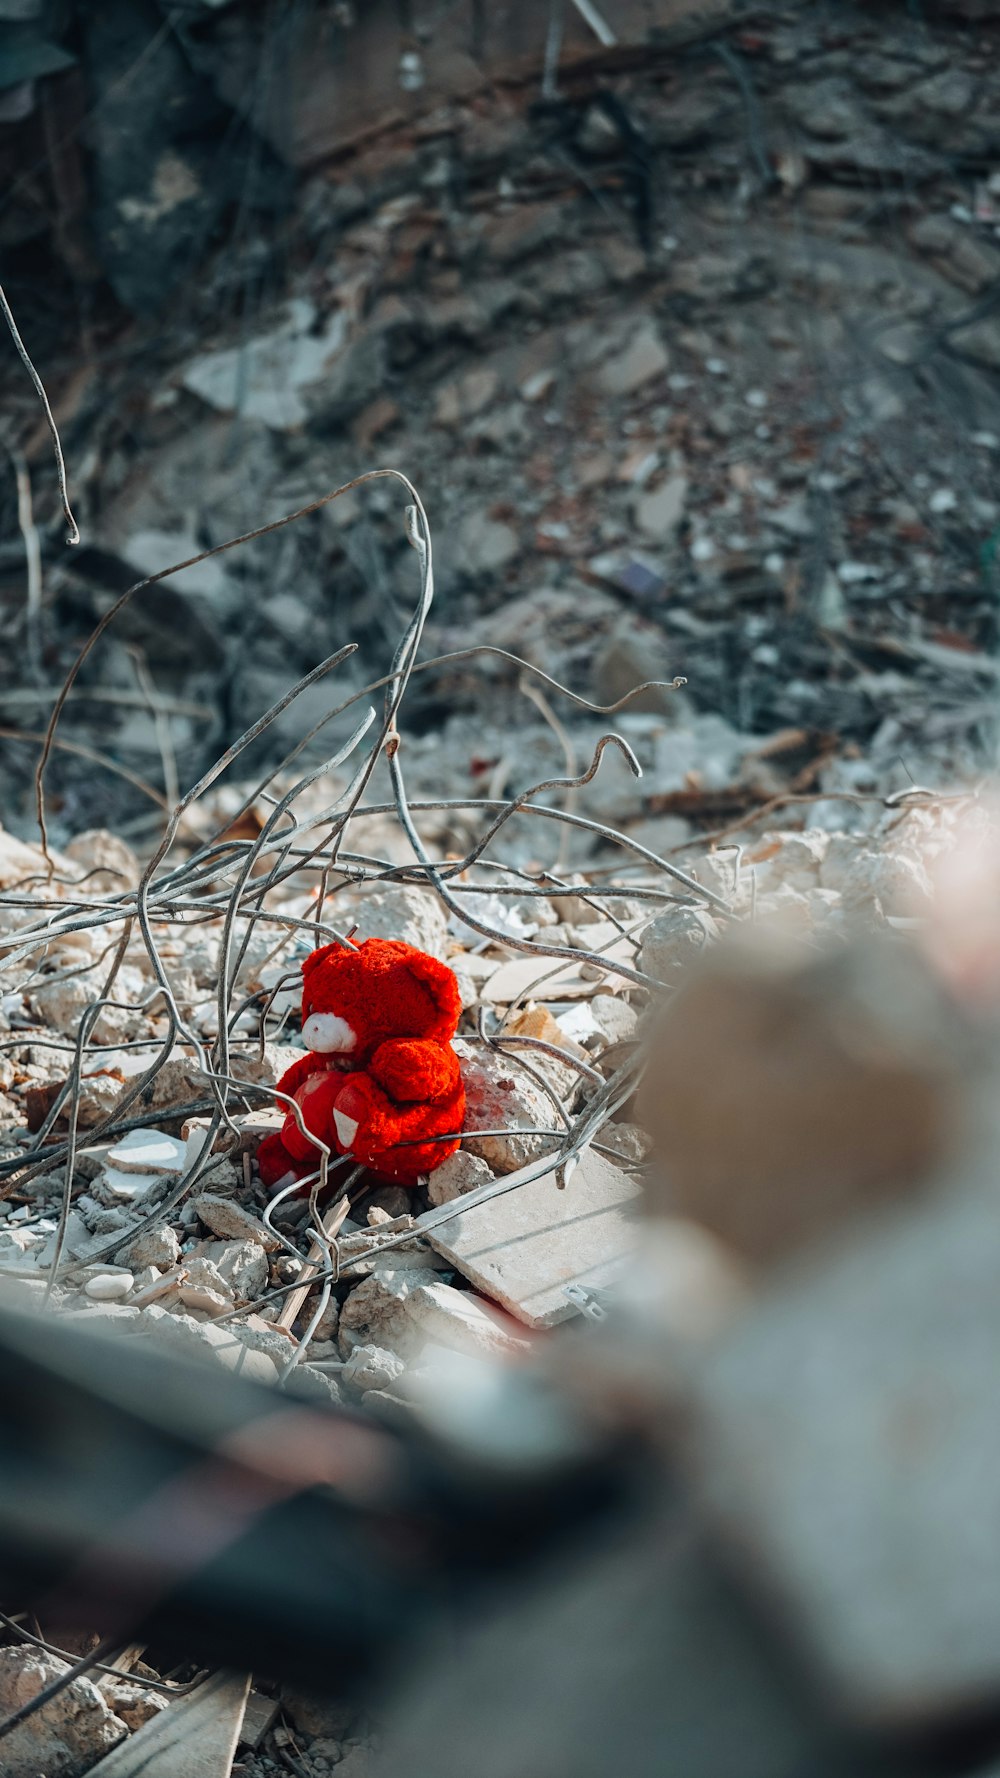 um ursinho de pelúcia vermelho sentado em cima de uma pilha de escombros